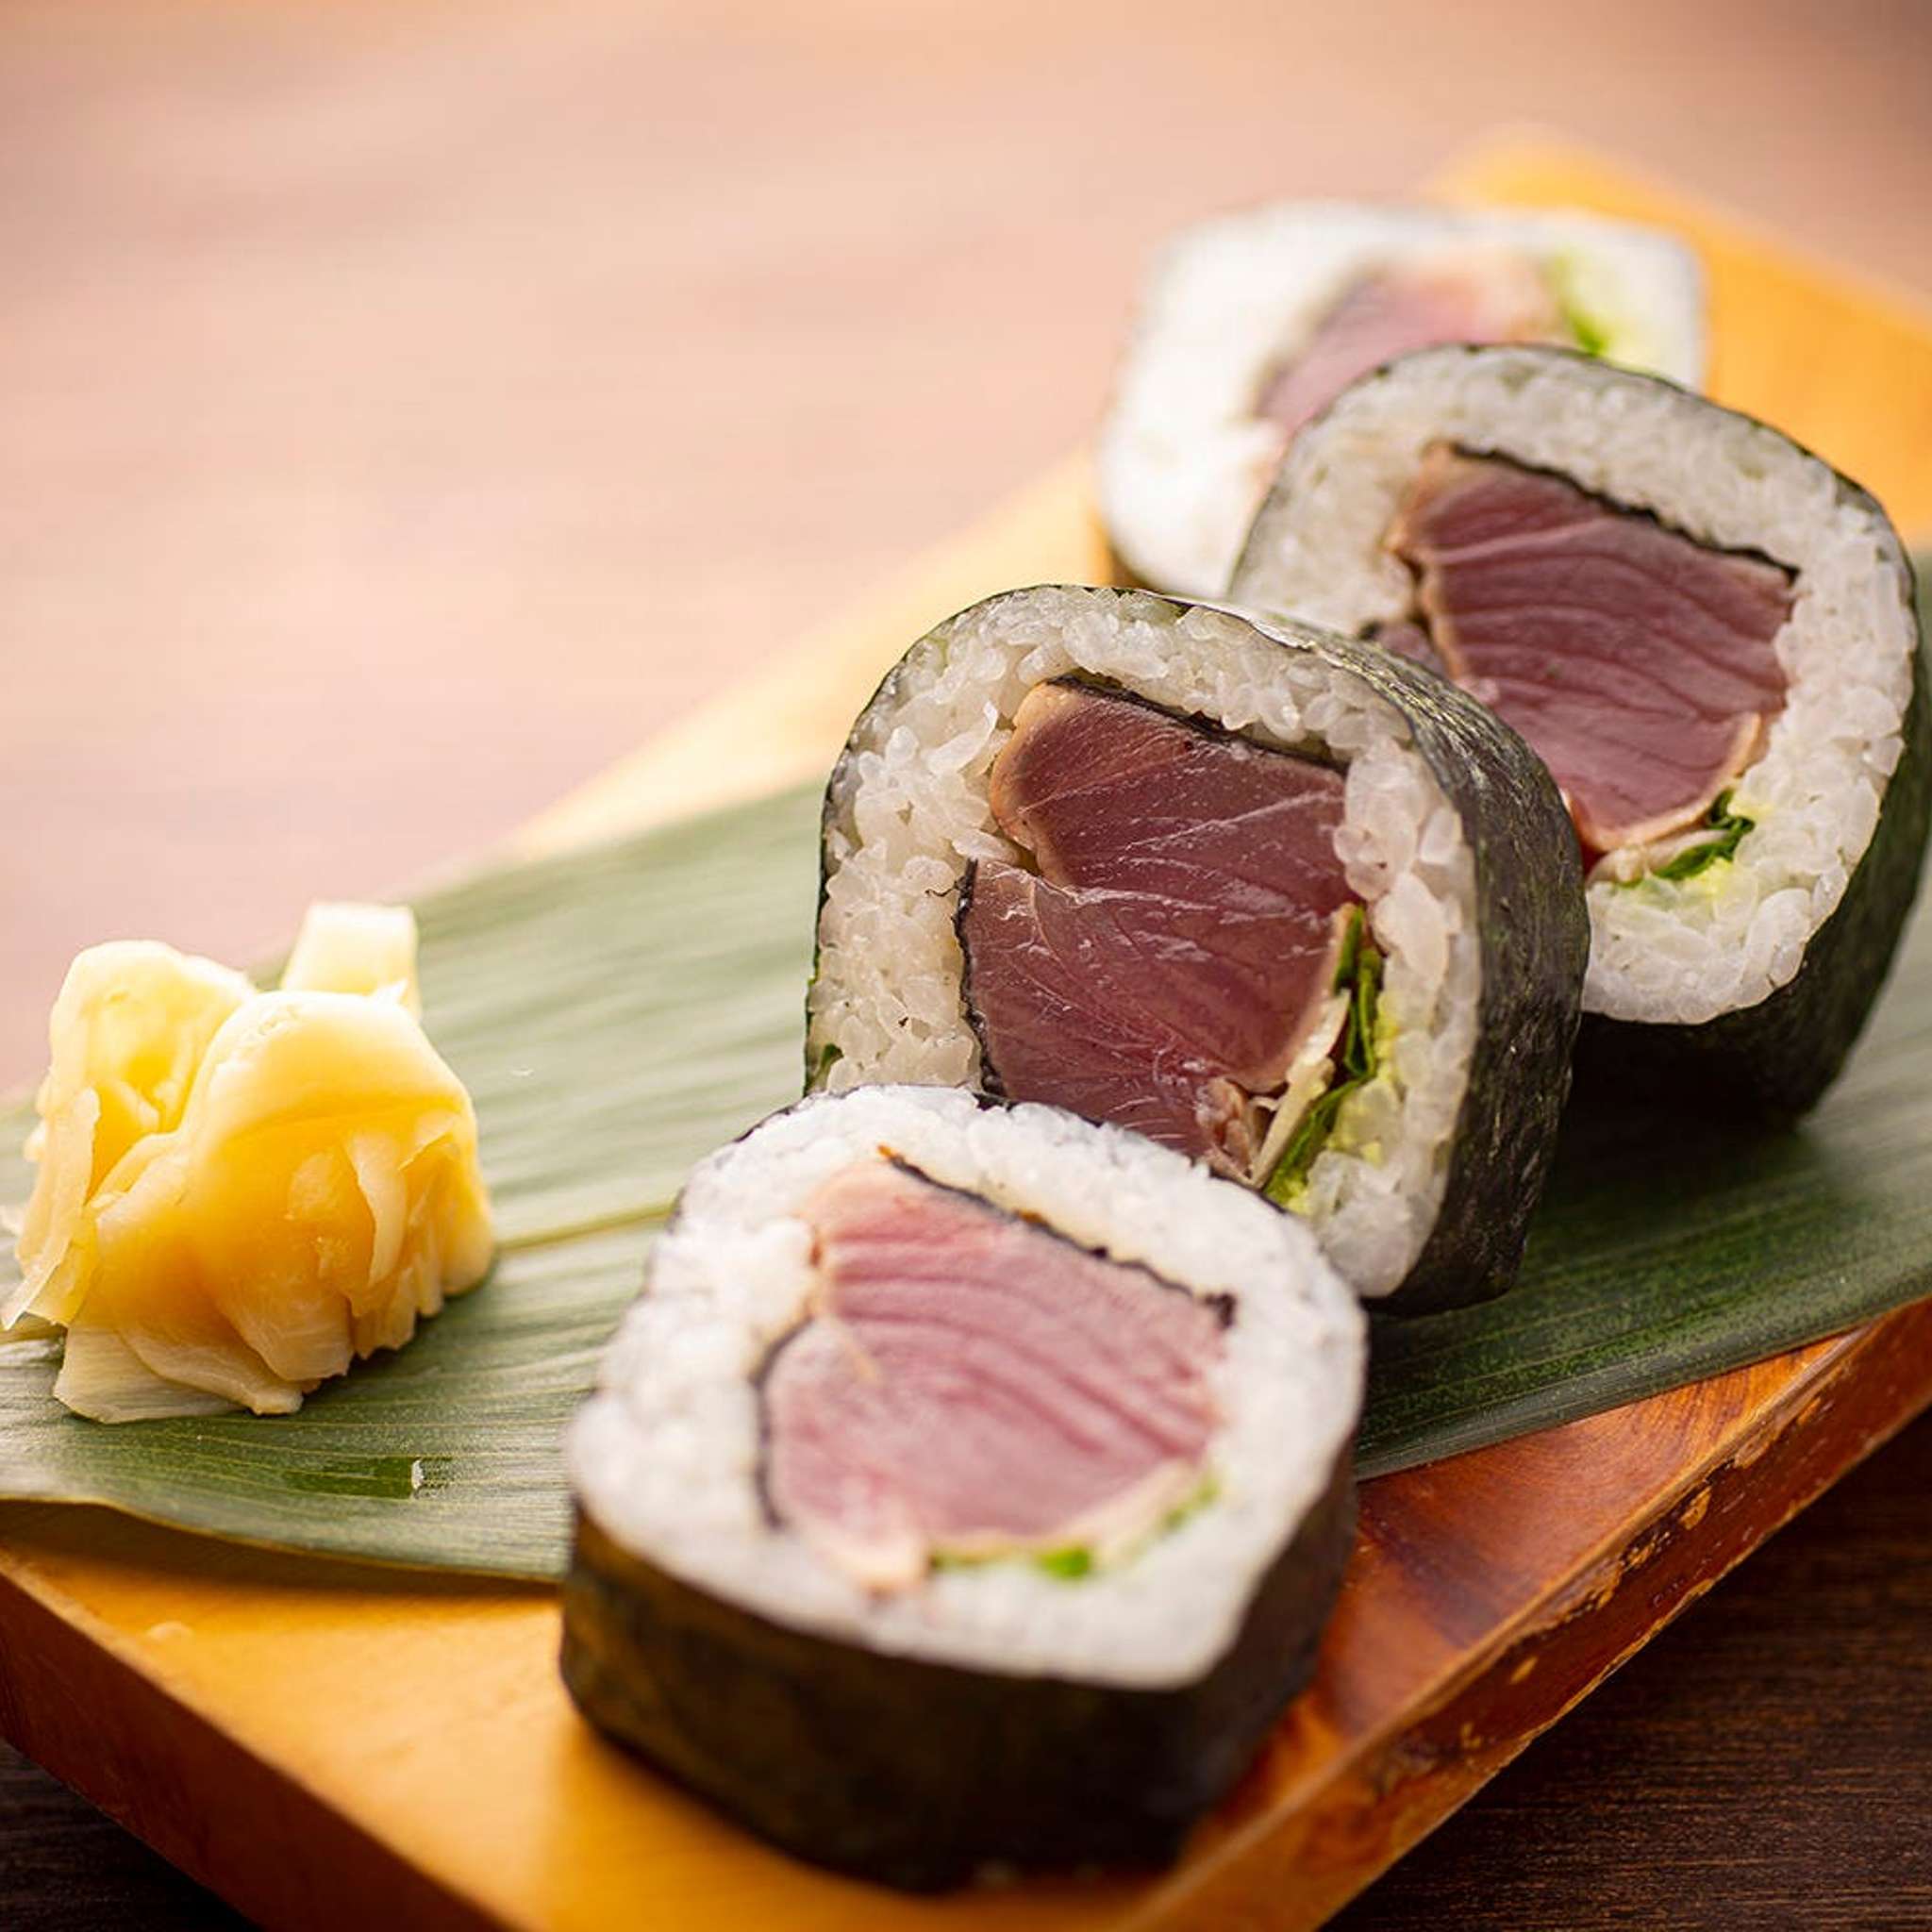 Tosa Maki (Seared Bonito Sushi Roll)